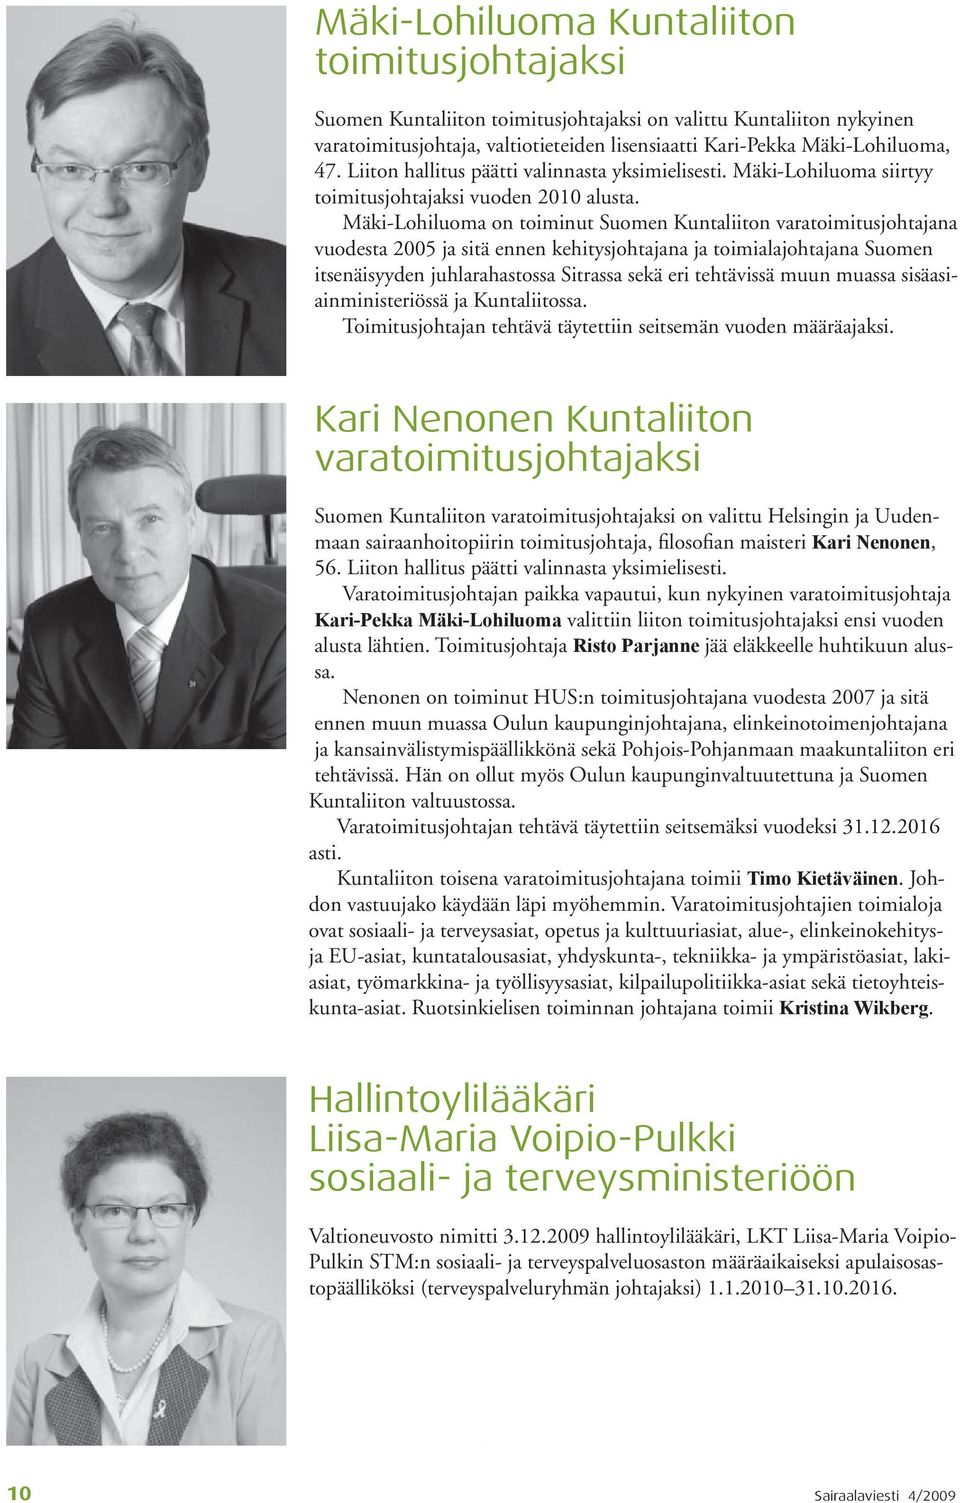 Mäki-Lohiluoma on toiminut Suomen Kuntaliiton varatoimitusjohtajana vuodesta 2005 ja sitä ennen kehitysjohtajana ja toimialajohtajana Suomen itsenäisyyden juhlarahastossa Sitrassa sekä eri tehtävissä